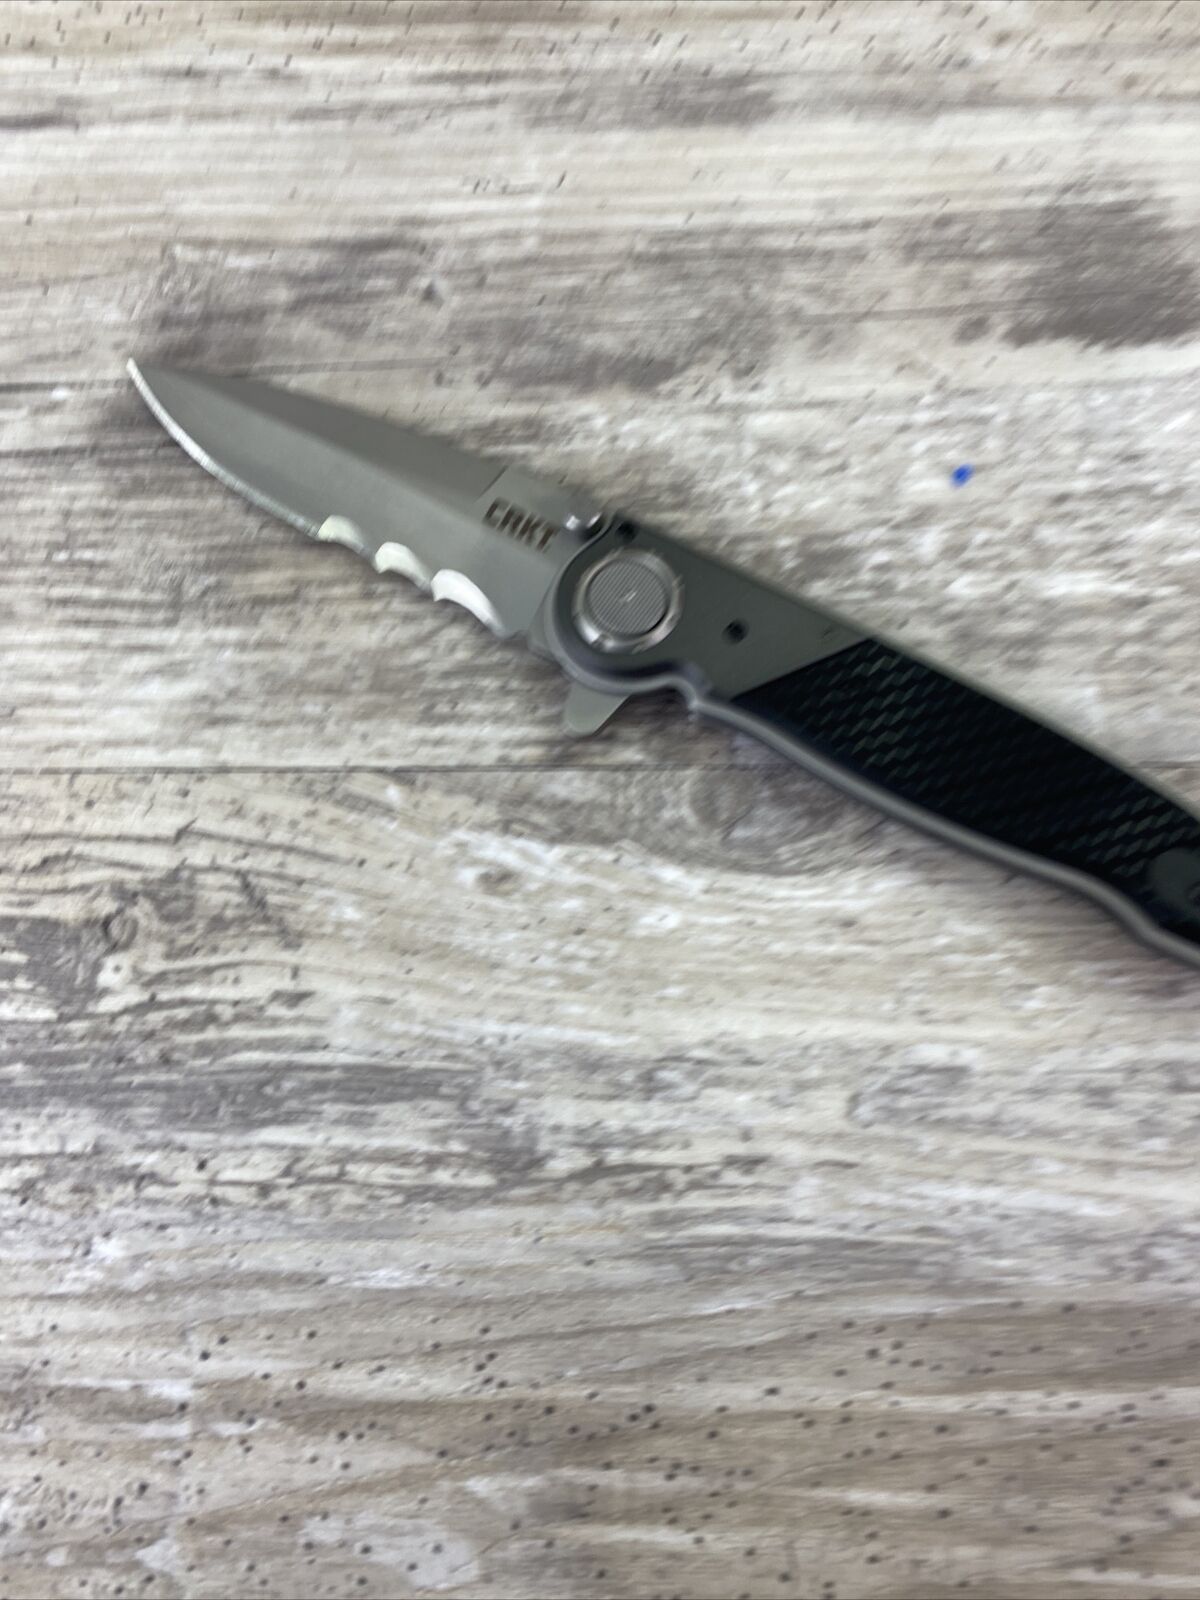 CRKT - Kit Carson Folding Knife- M40-15